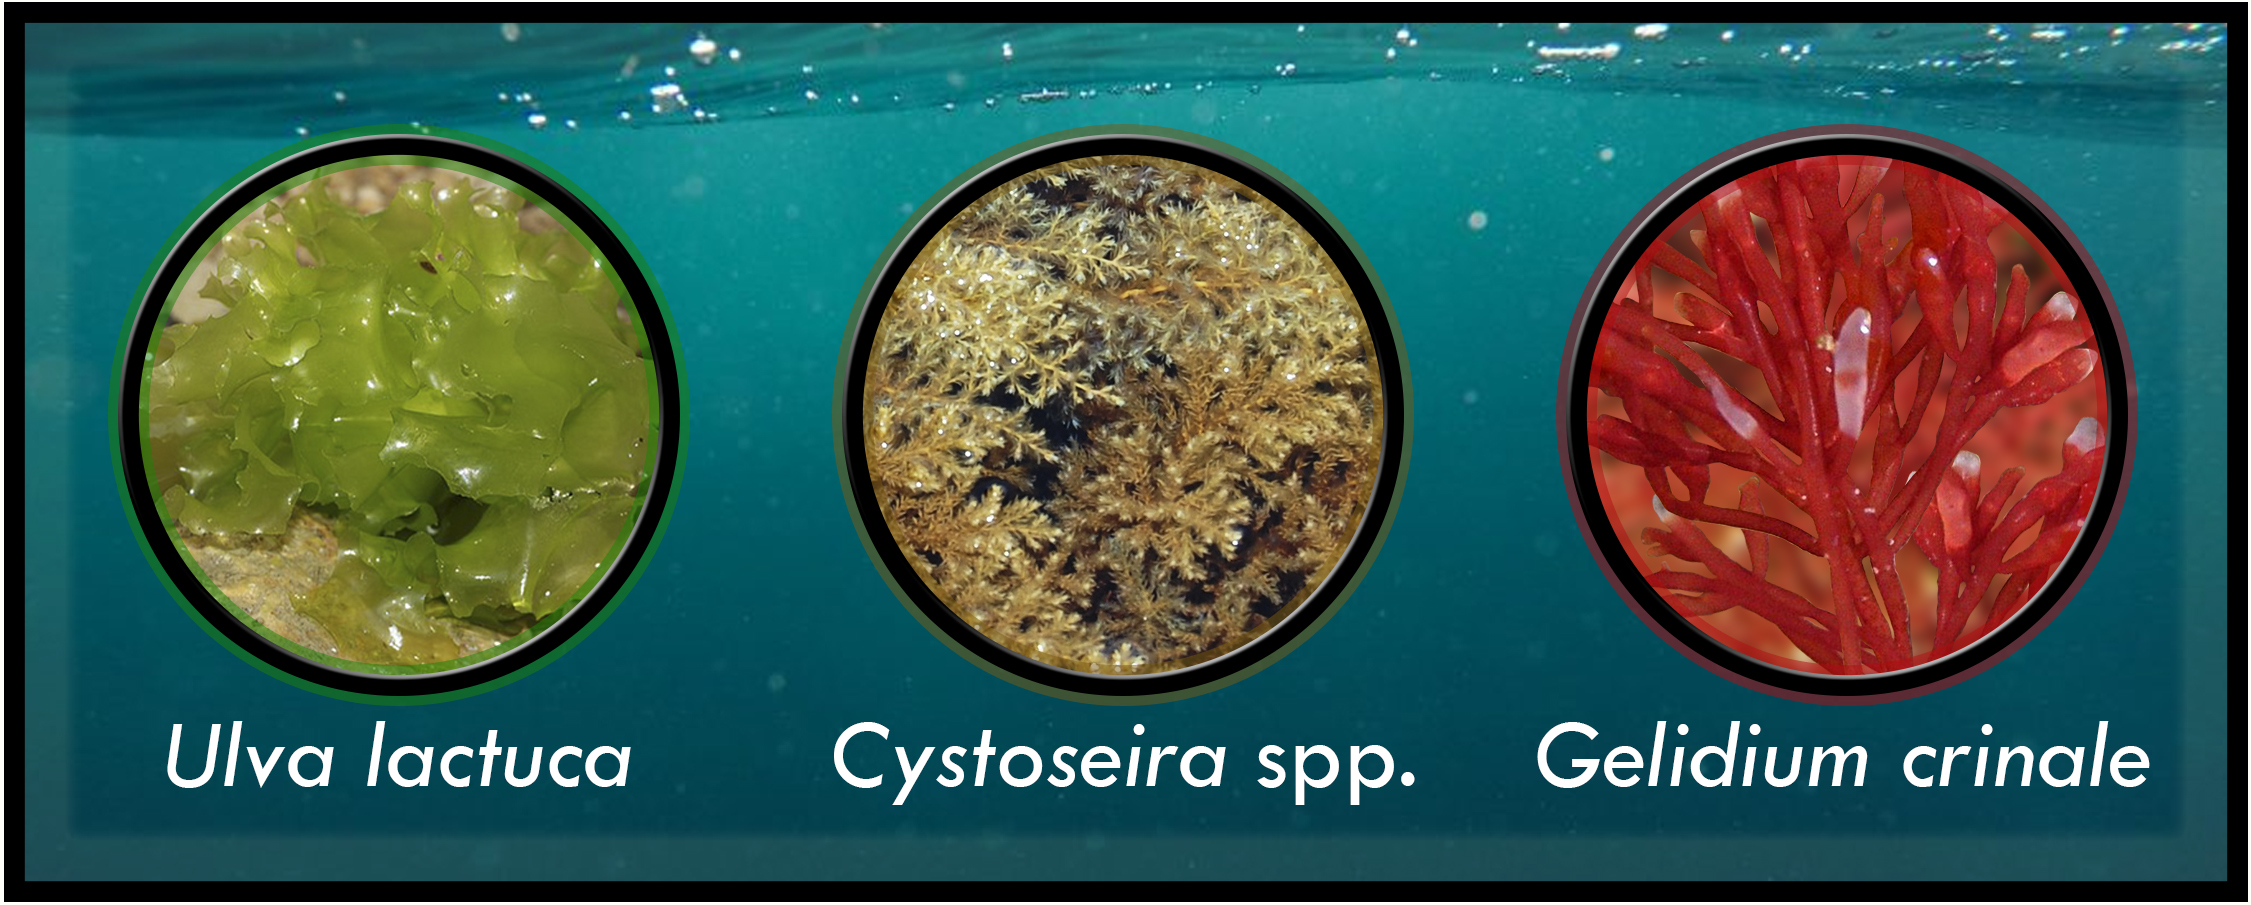 Algunas macroalgas utilizadas como biofertilizantes. De izquierda a derecha: Ulva lactuca, Cystoseira spp. y Gelidium crinale. Alga verde, alga parda y alga roja, respectivamente.